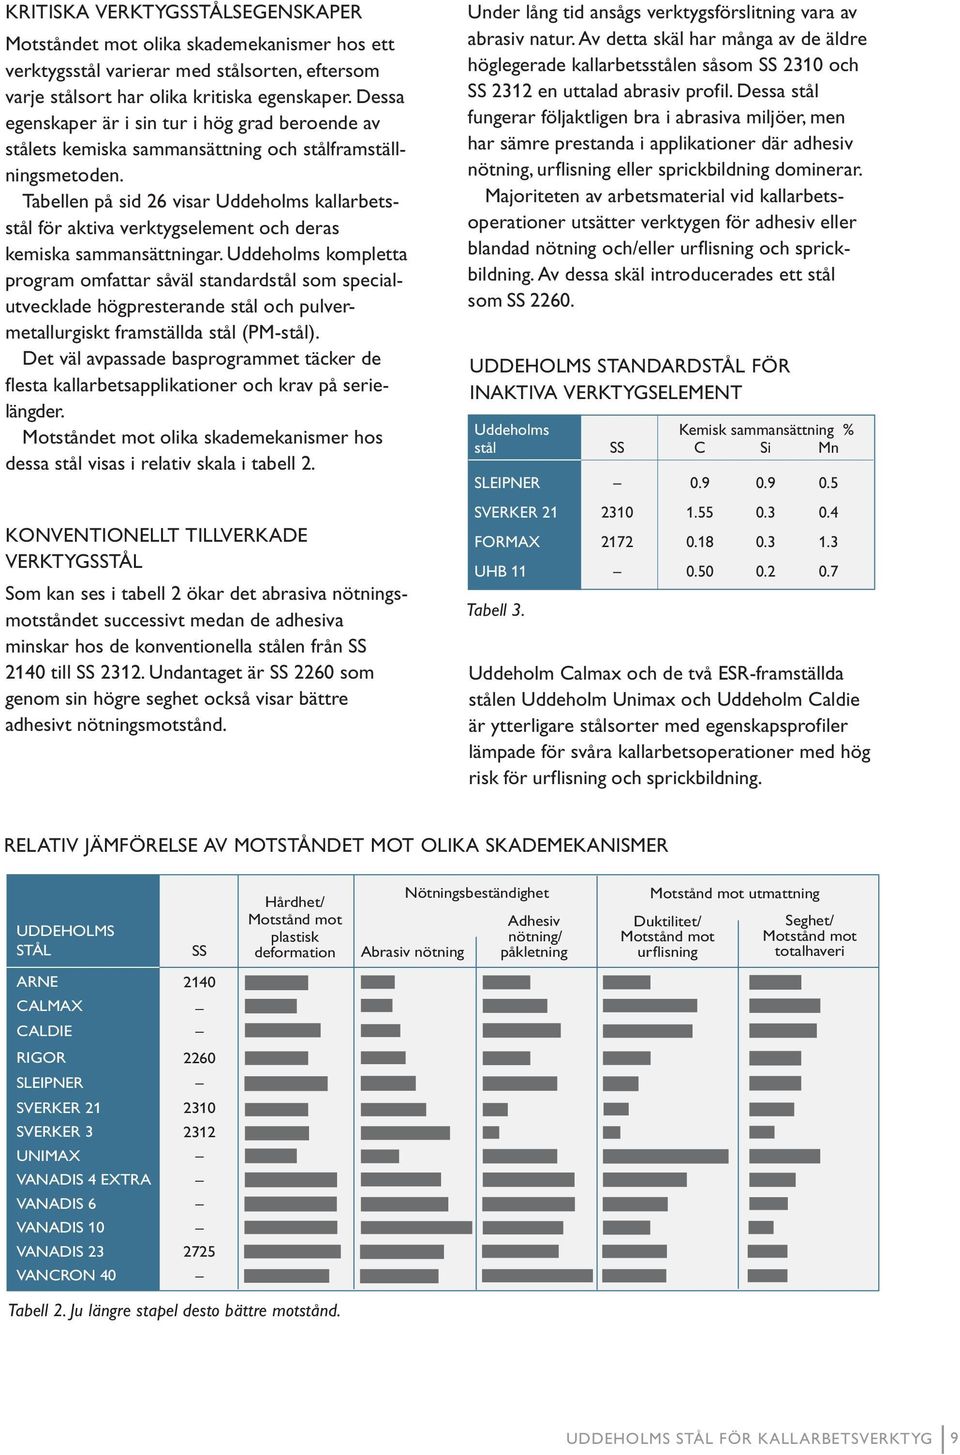 Tabellen på sid 26 visar Uddeholms kallarbetsstål för aktiva verktygselement och deras kemiska sammansättningar.